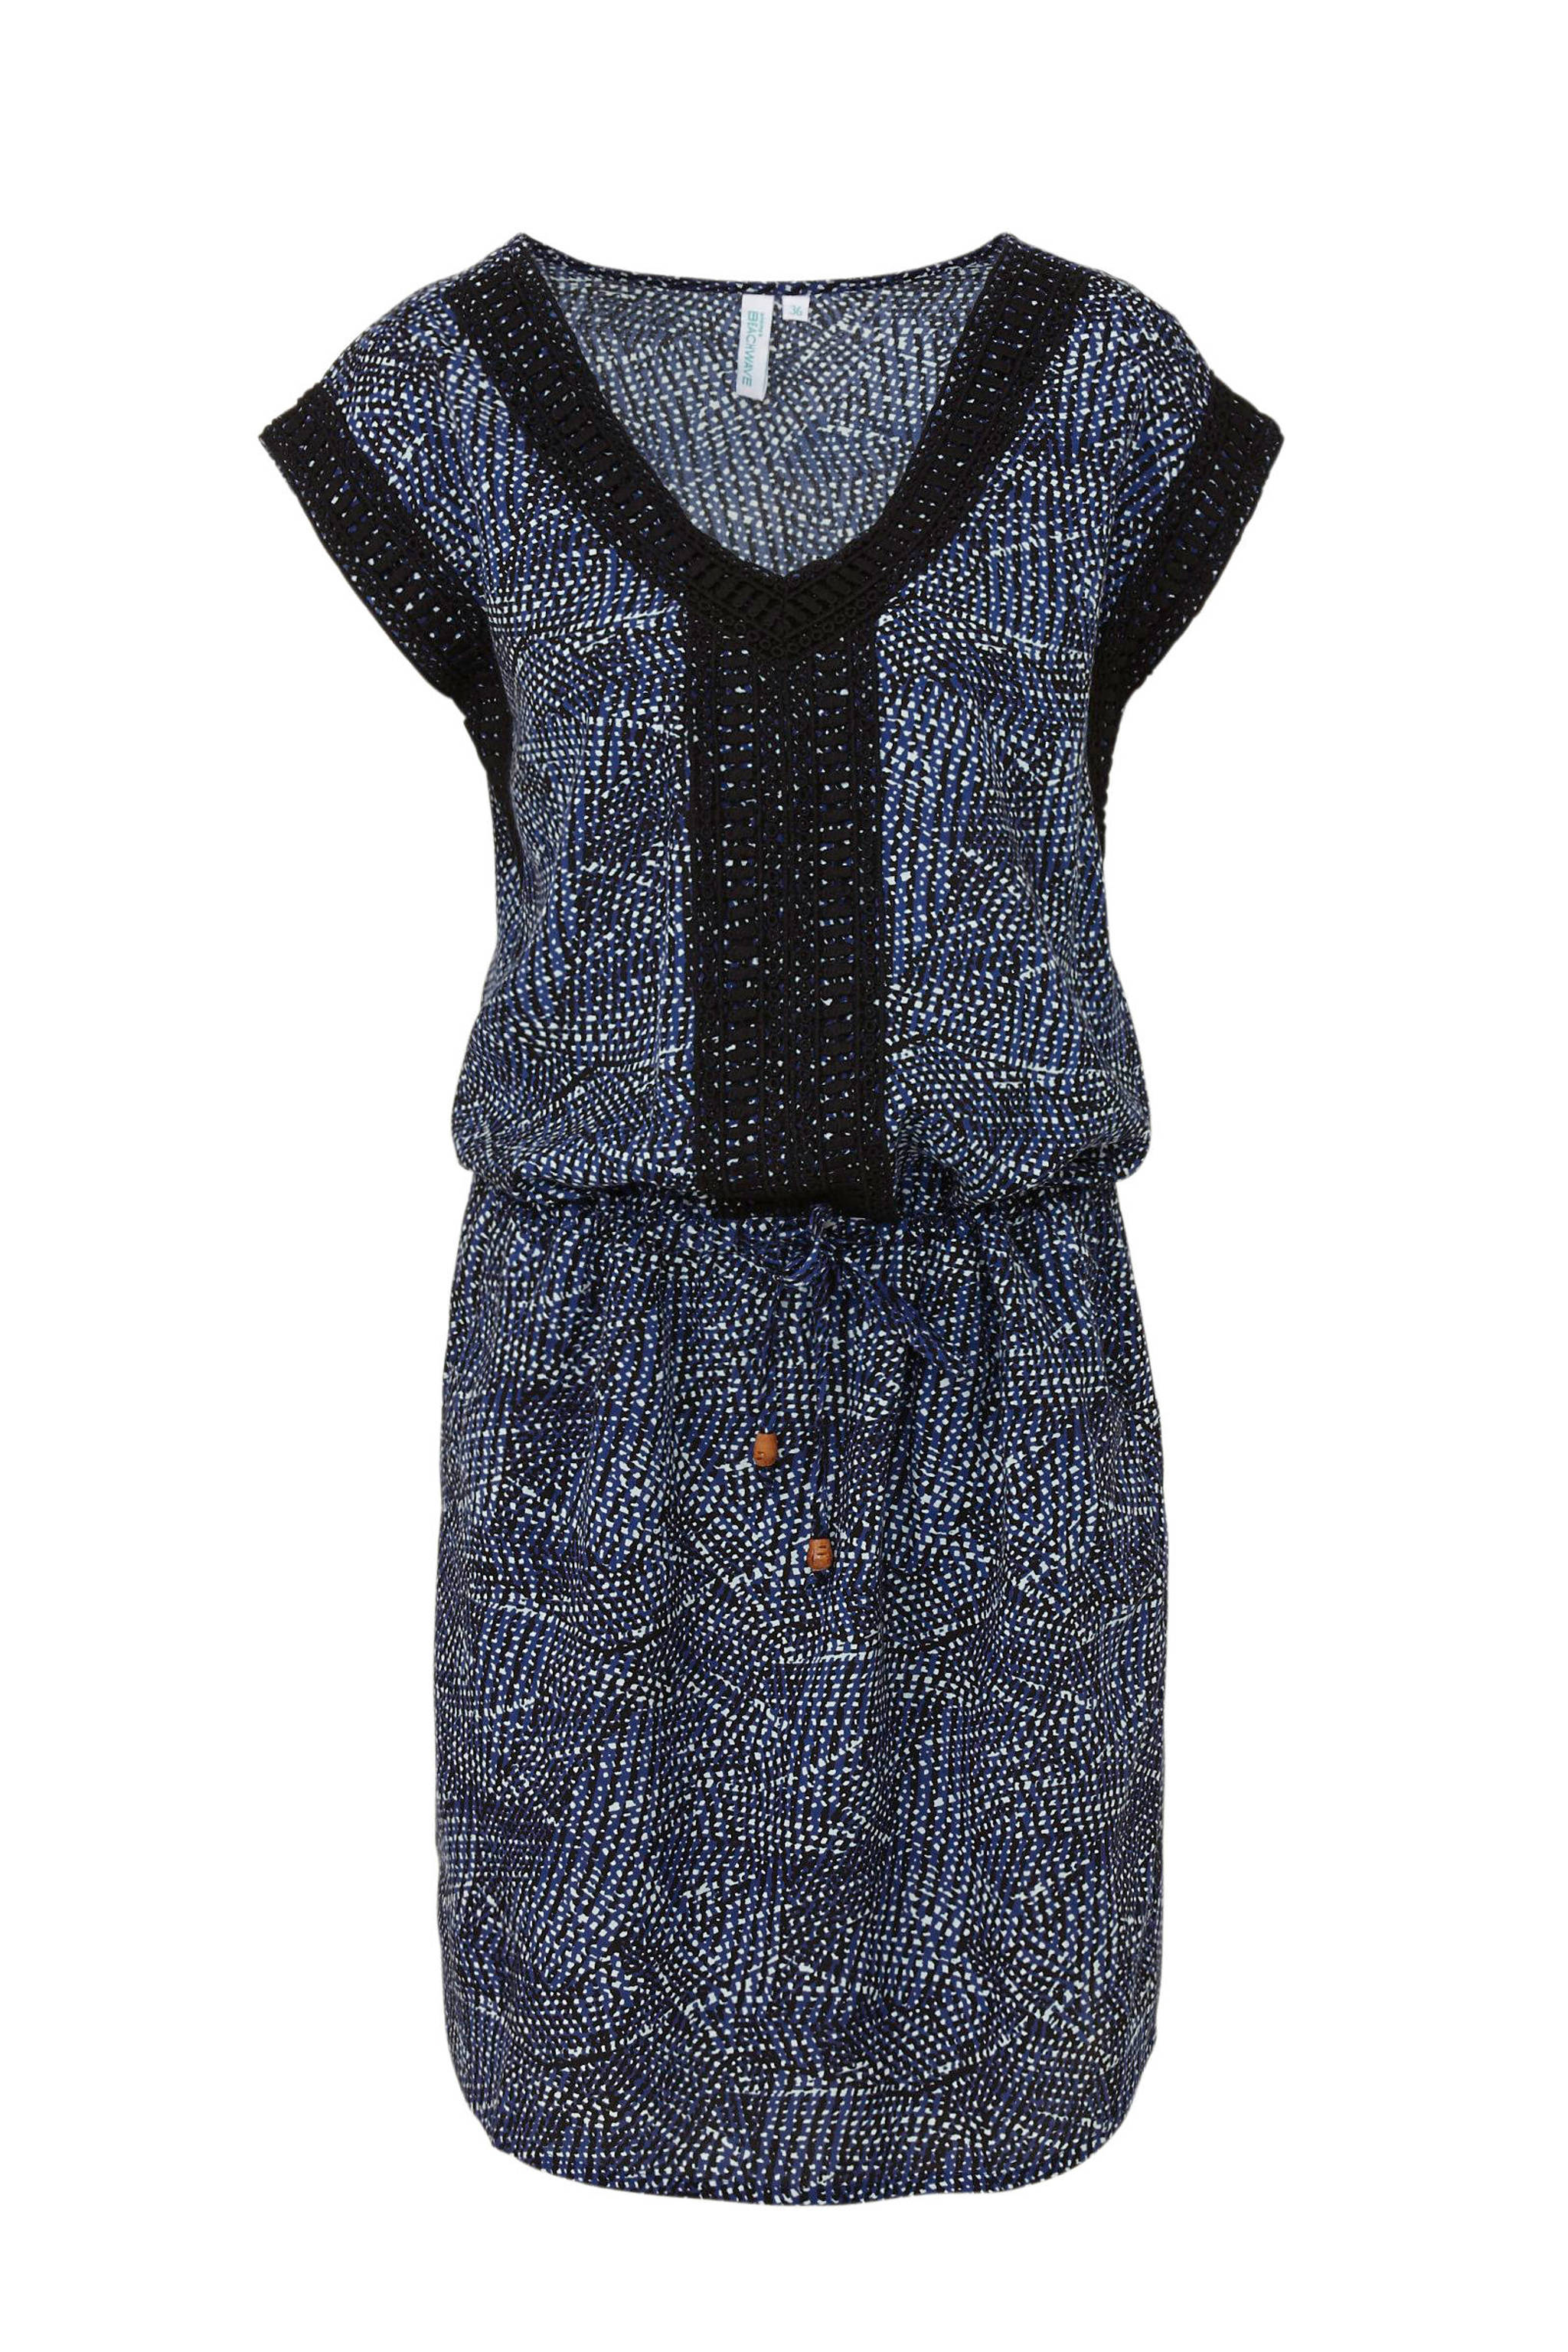 Fonkelnieuw whkmp's beachwave jurk met all over print en kant blauw/zwart/ecru UR-18